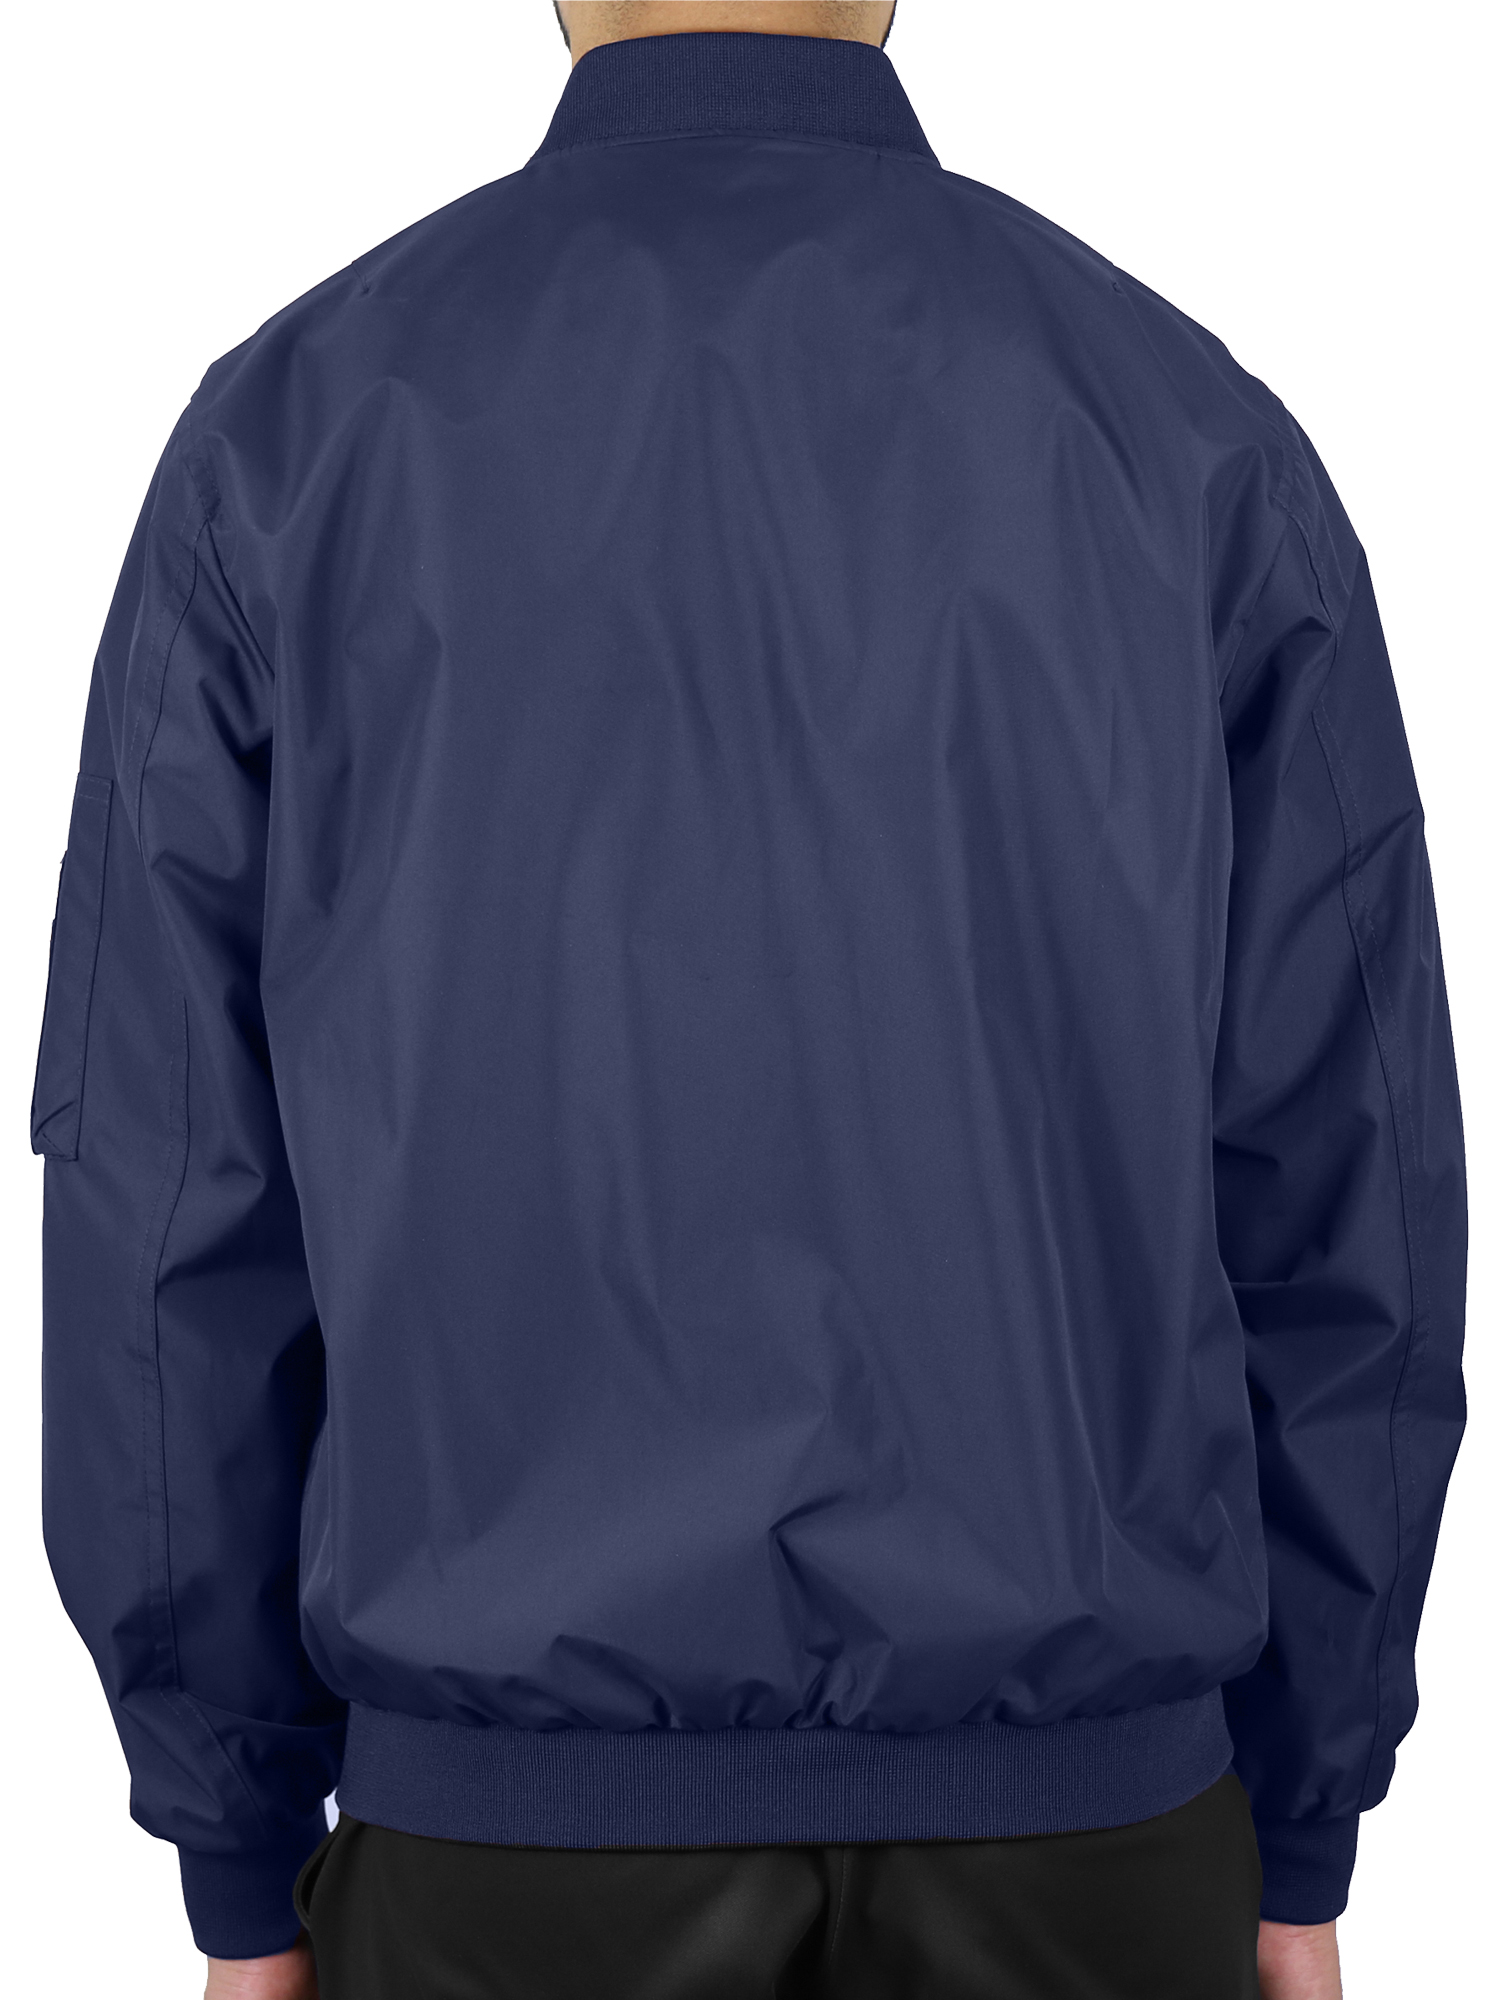 Men's Lightweight Full-Zip Windbreaker Jacket - image 3 of 5